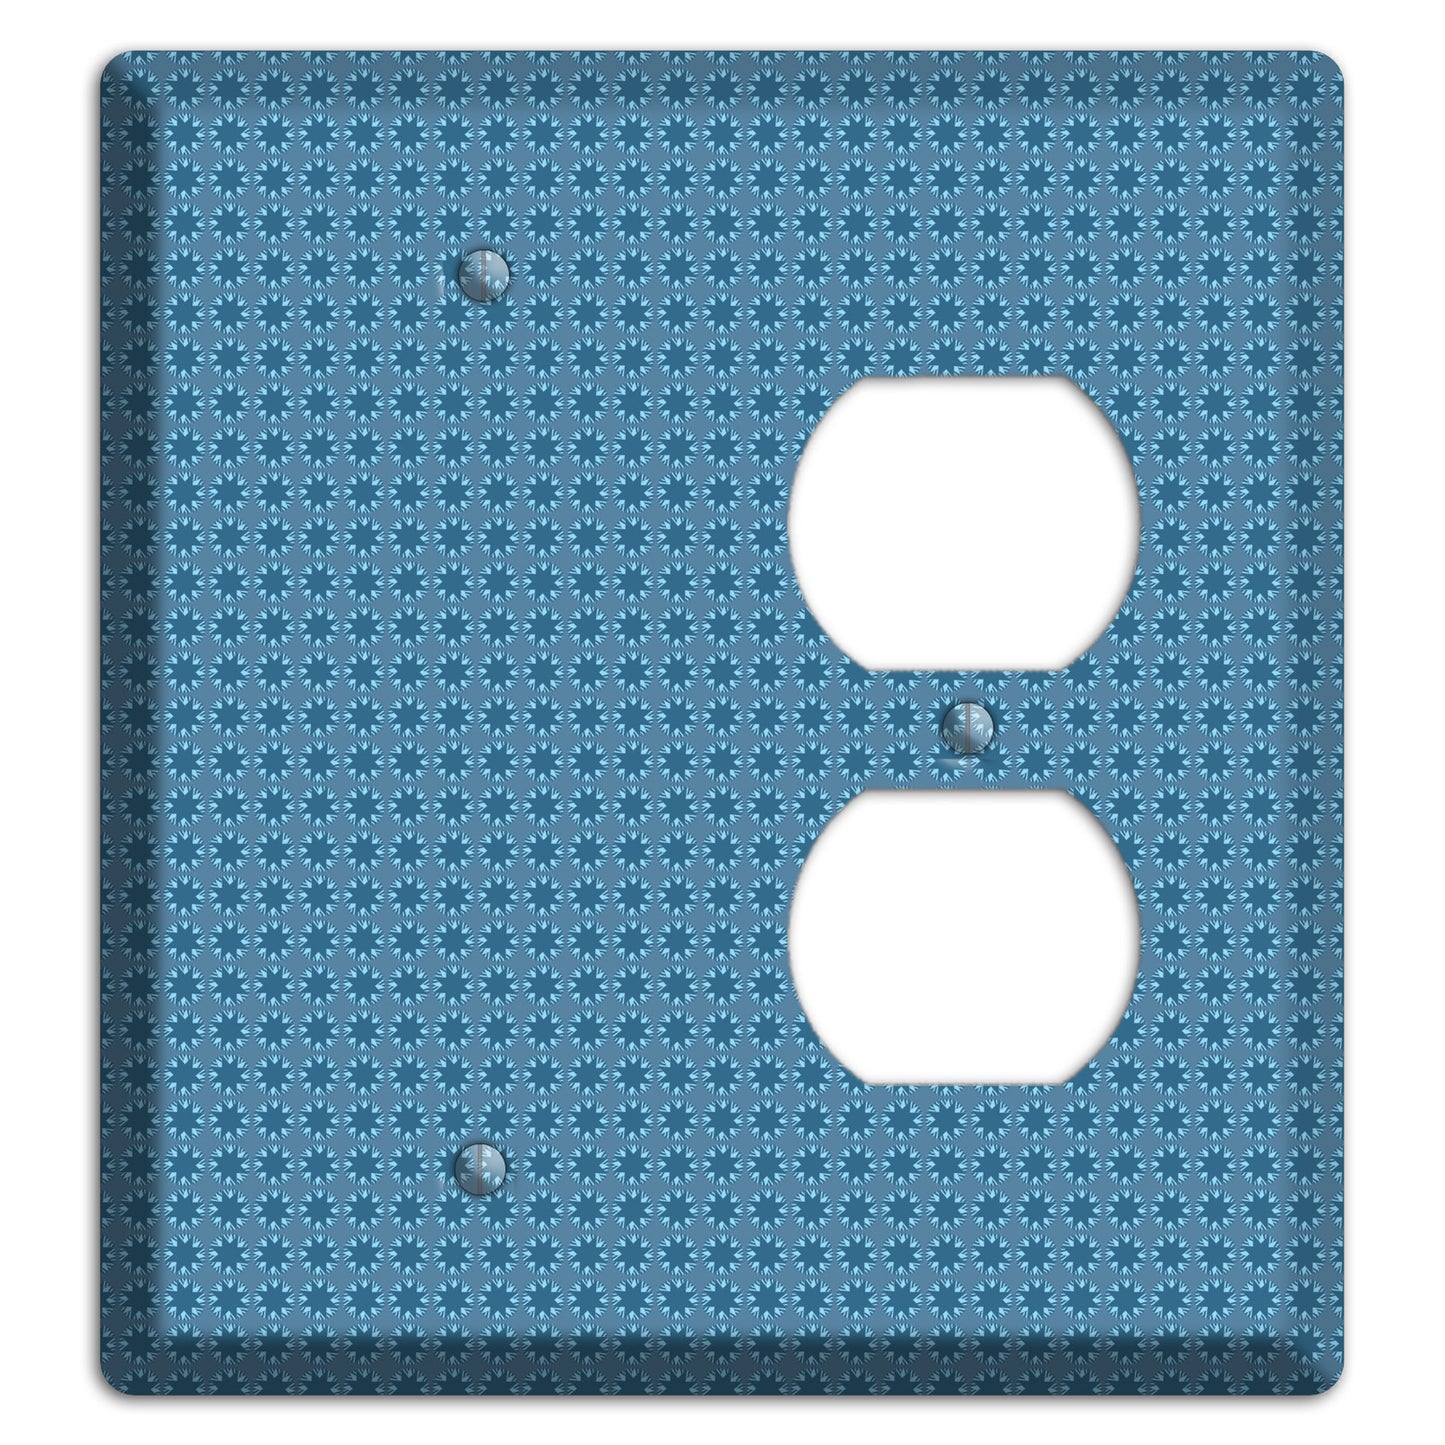 Multi Blue Tiled Foulard Blank / Duplex Wallplate